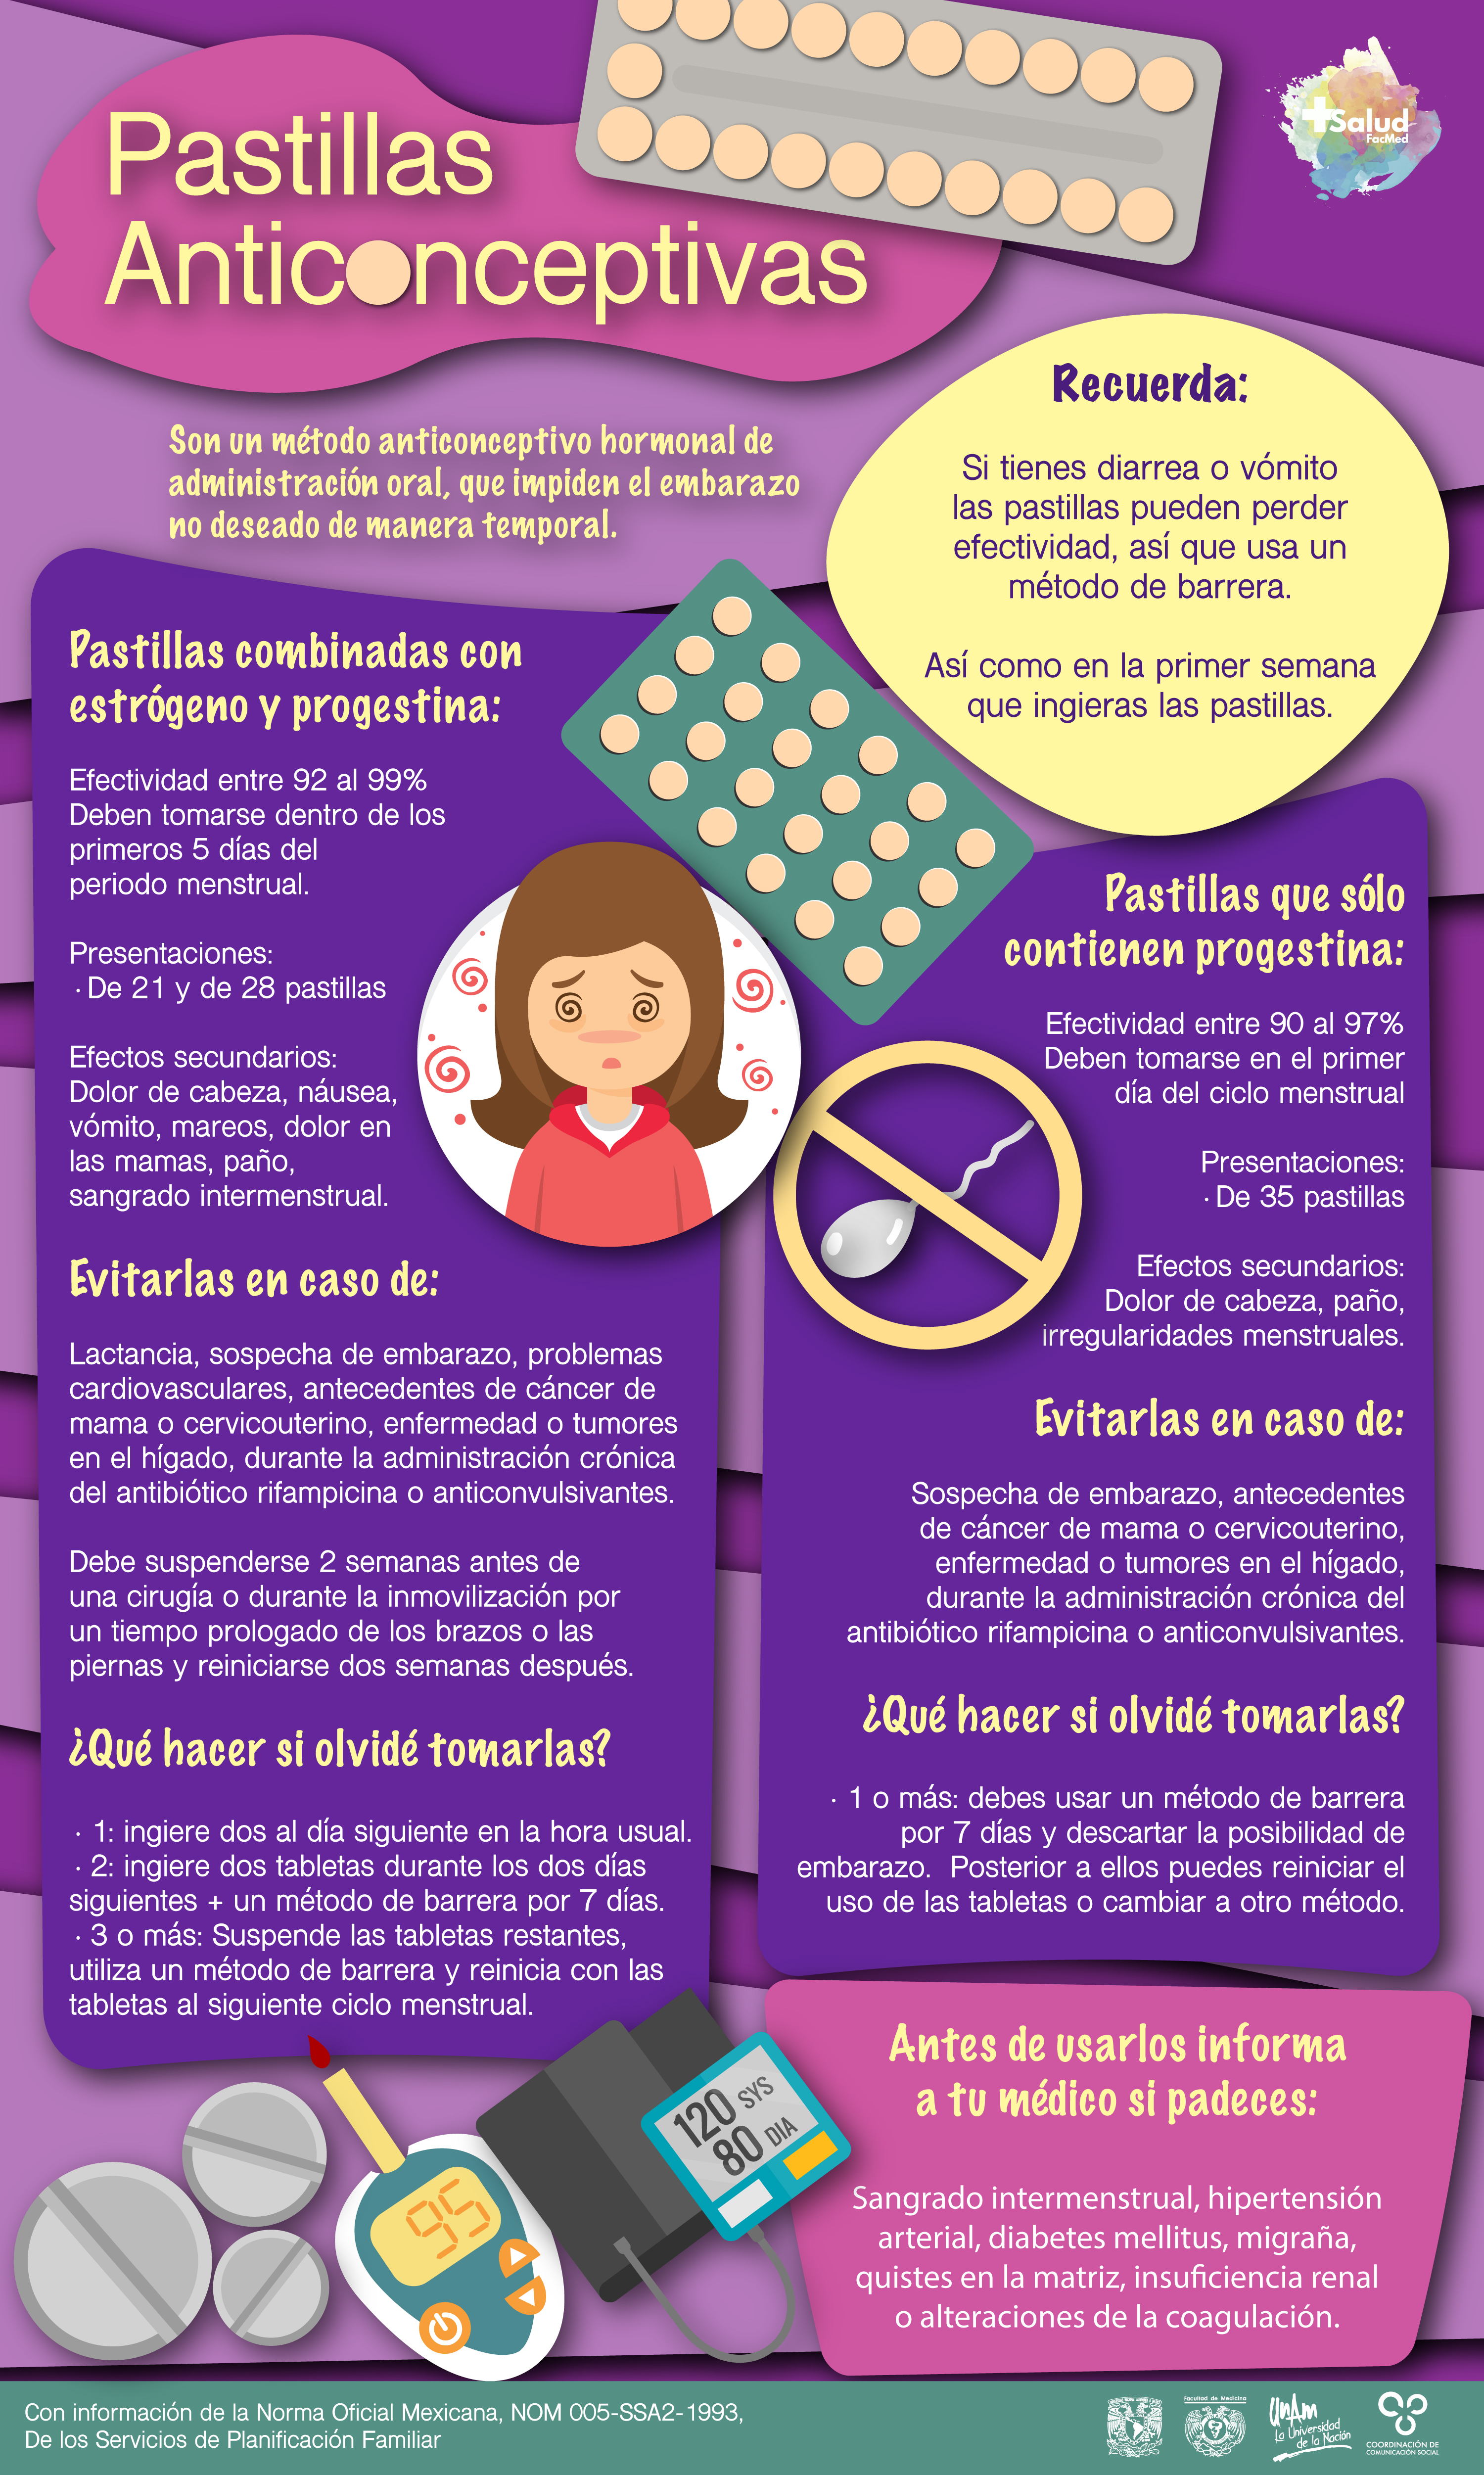 administración parque enaguas Tipos de pastillas anticonceptivas - +Salud FacMed